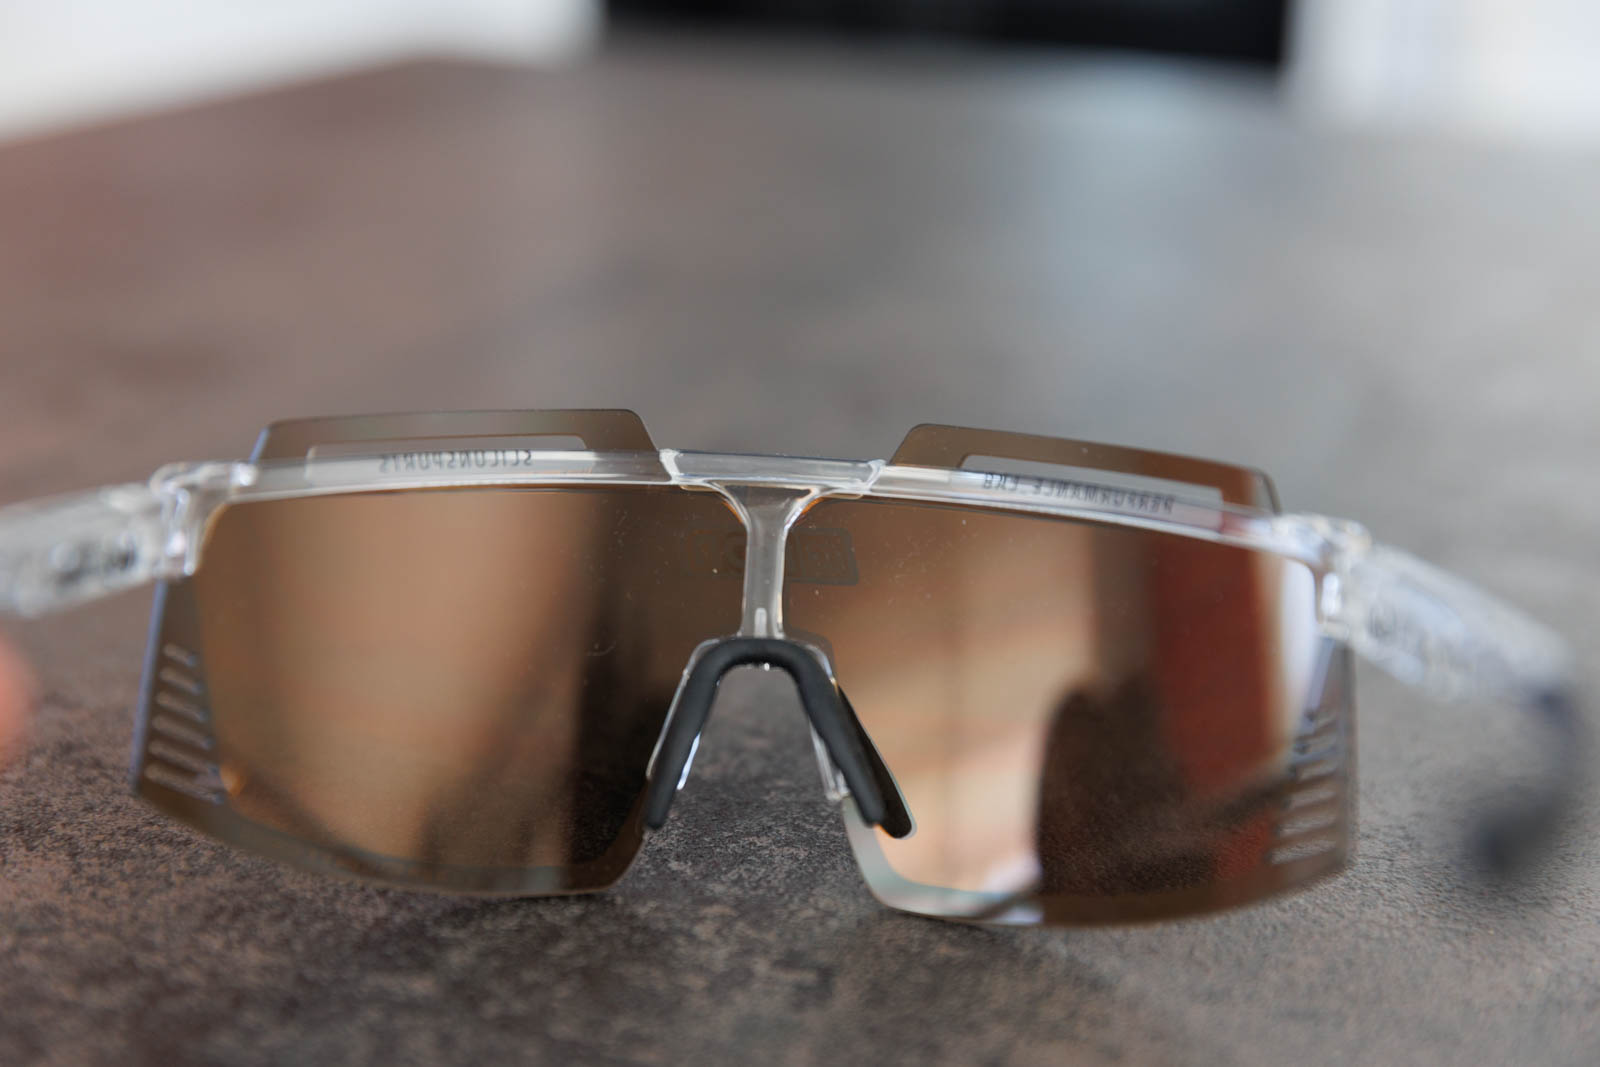 Scicon présente deux paires de lunettes, l'Aerowatt et la Foza